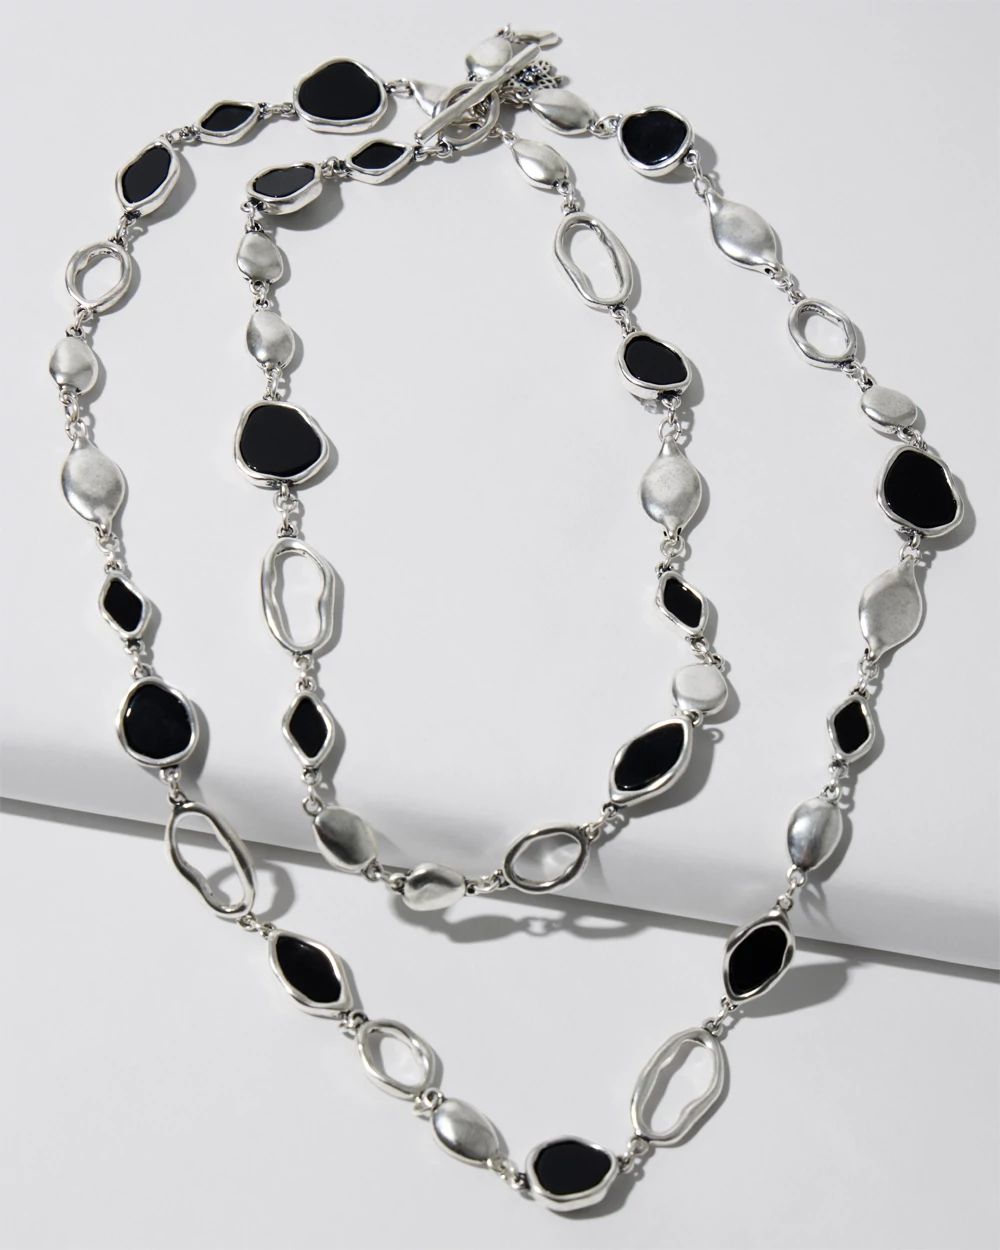 Silvertone and Black Disc Y-Necklace